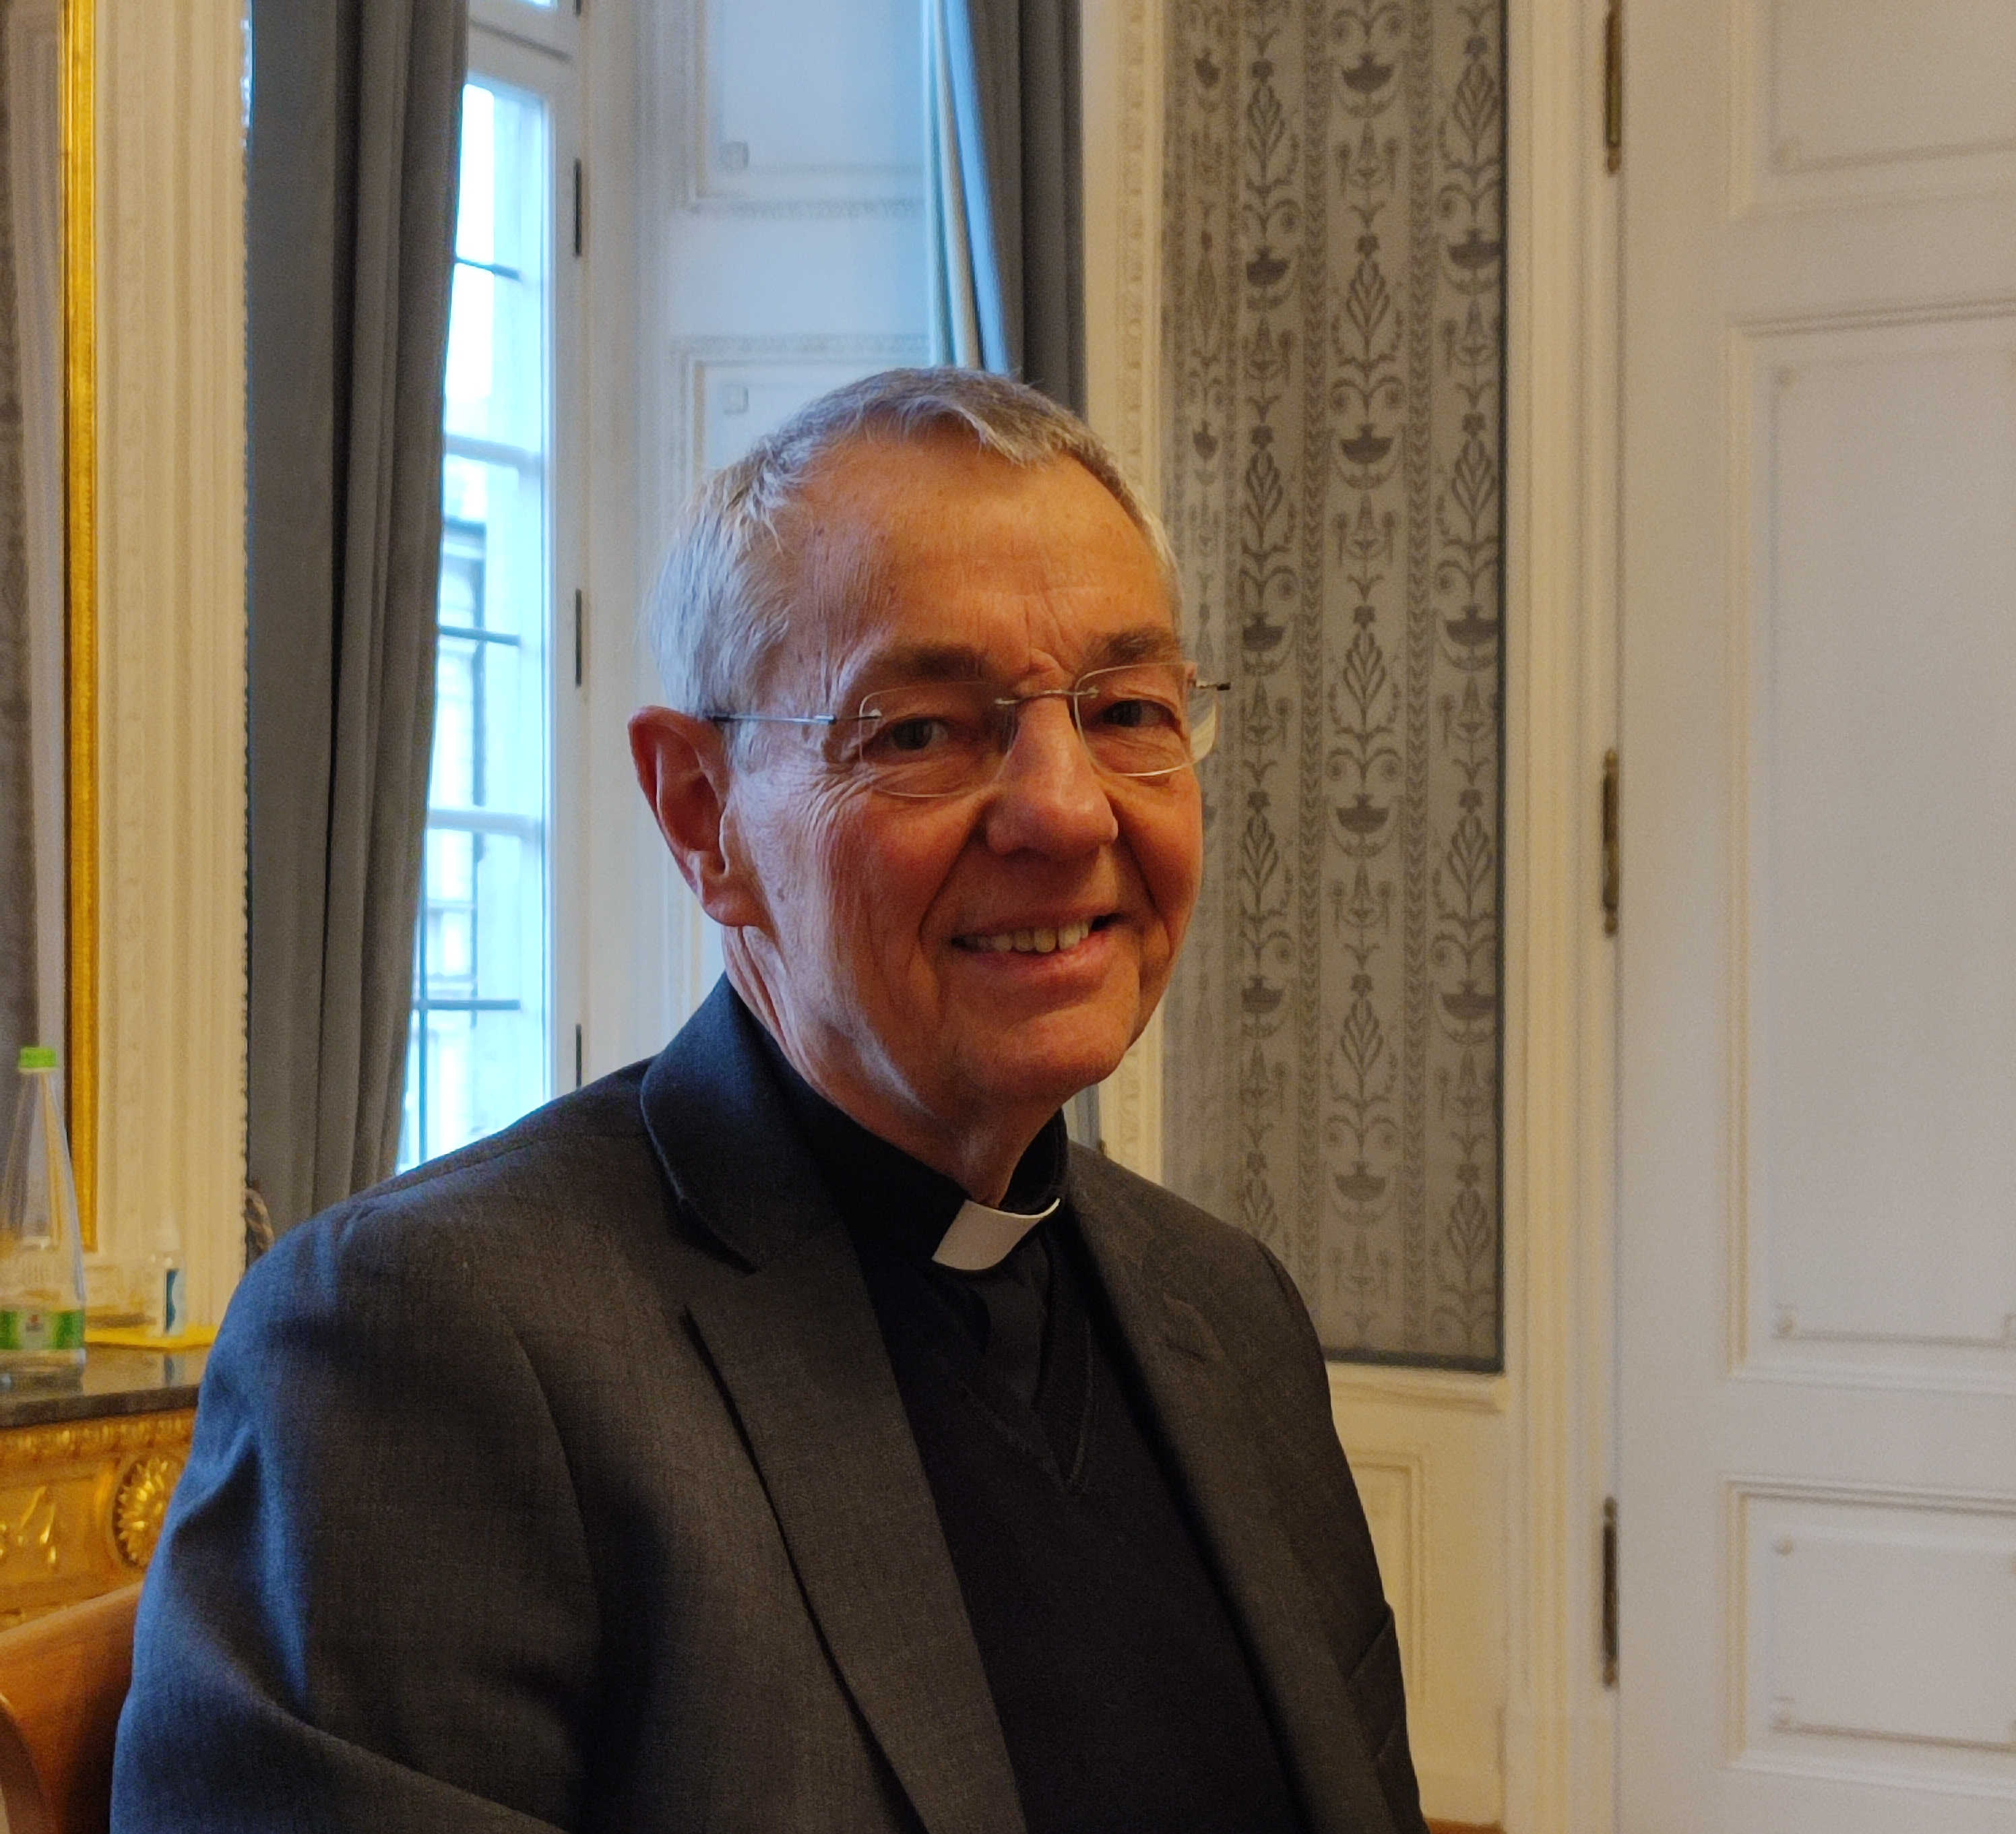 Nordostindien IV: Erzbischof Ludwig Schick über seine Erfahrungen mit dem Hindu-Nationalismus